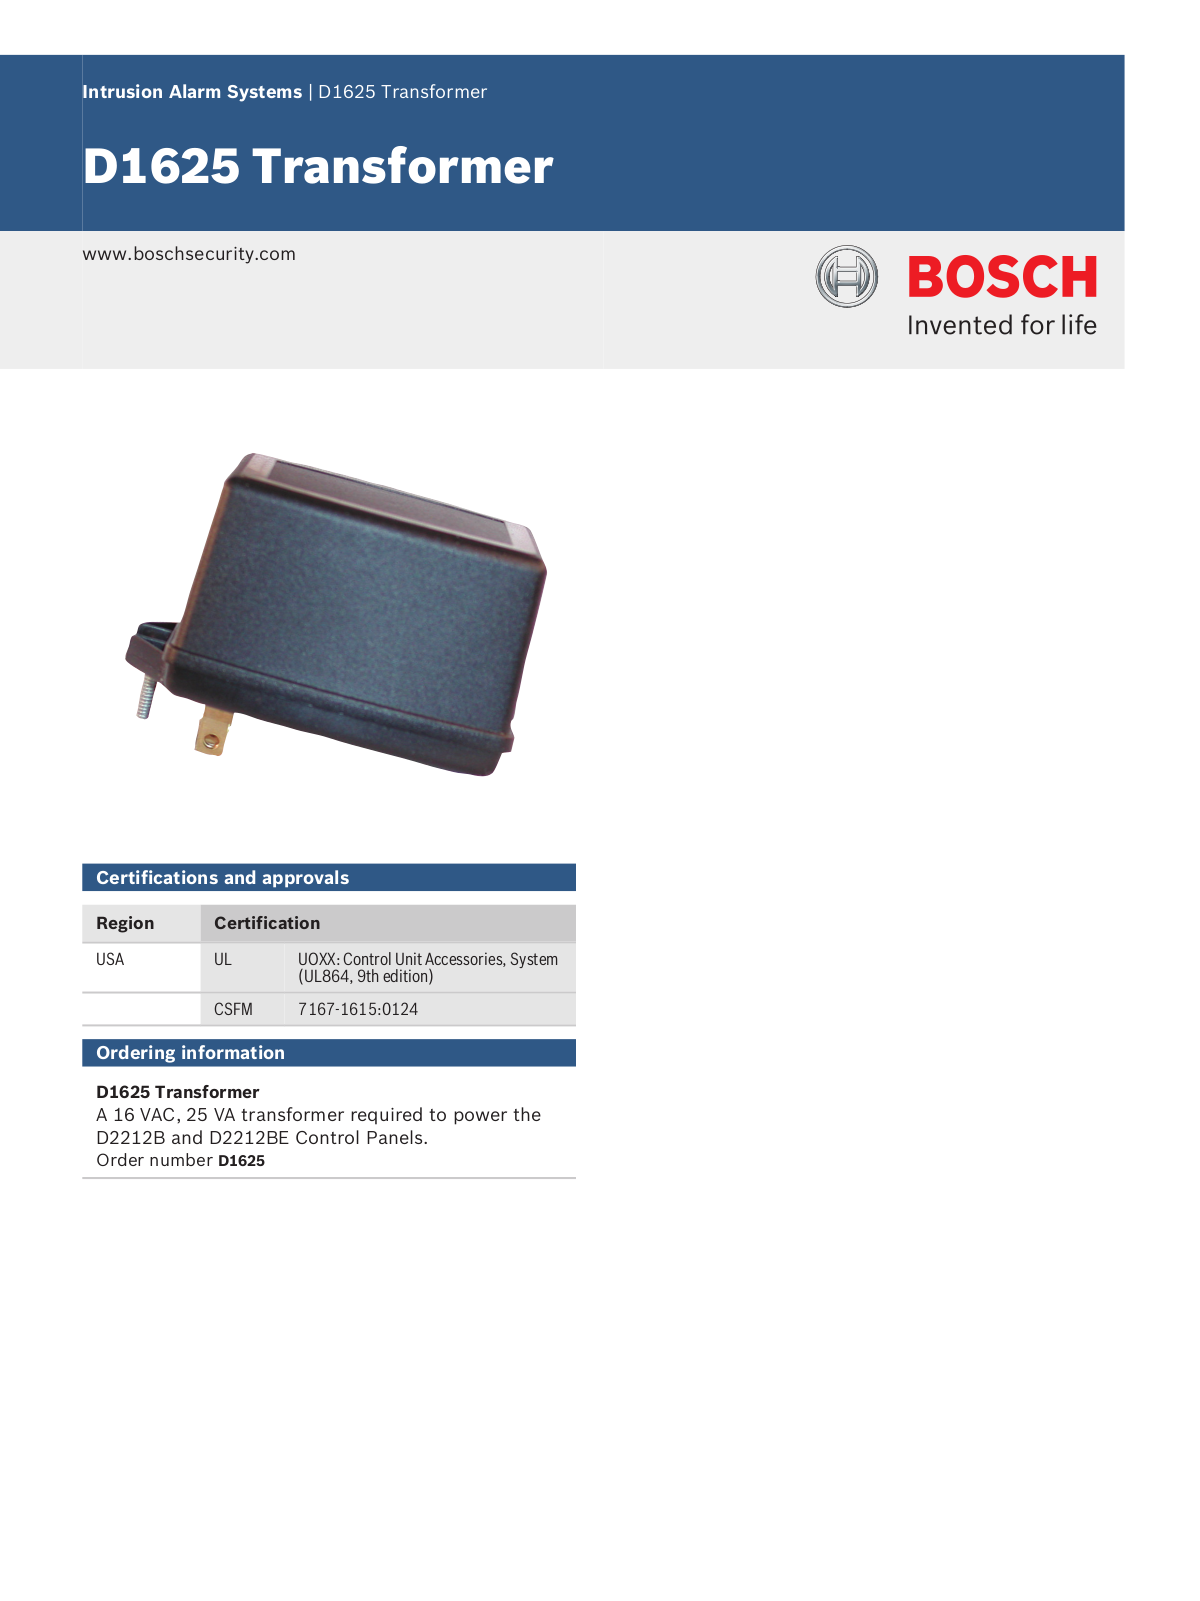 Bosch D1625 Specsheet